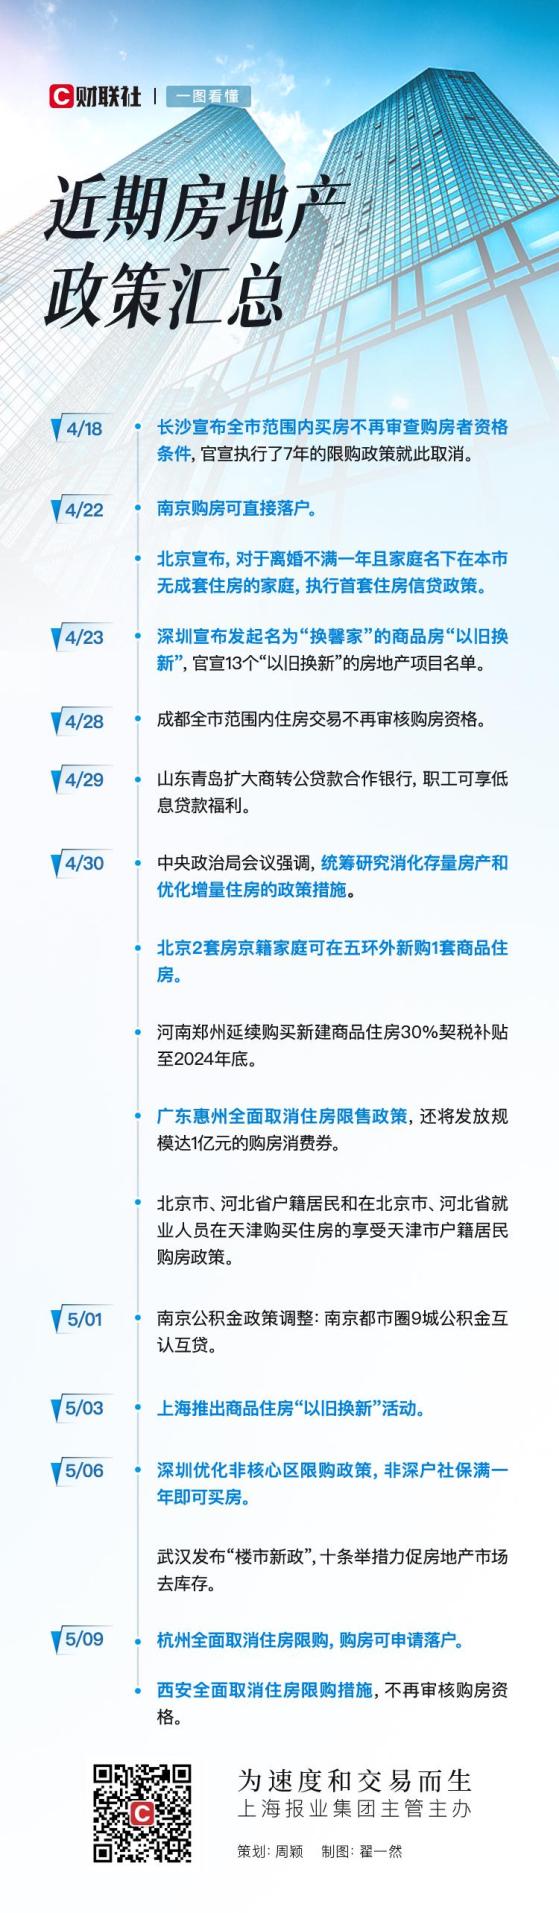 杭州、西安同日取消限购 全国限购仅剩四大一线城市及海南等